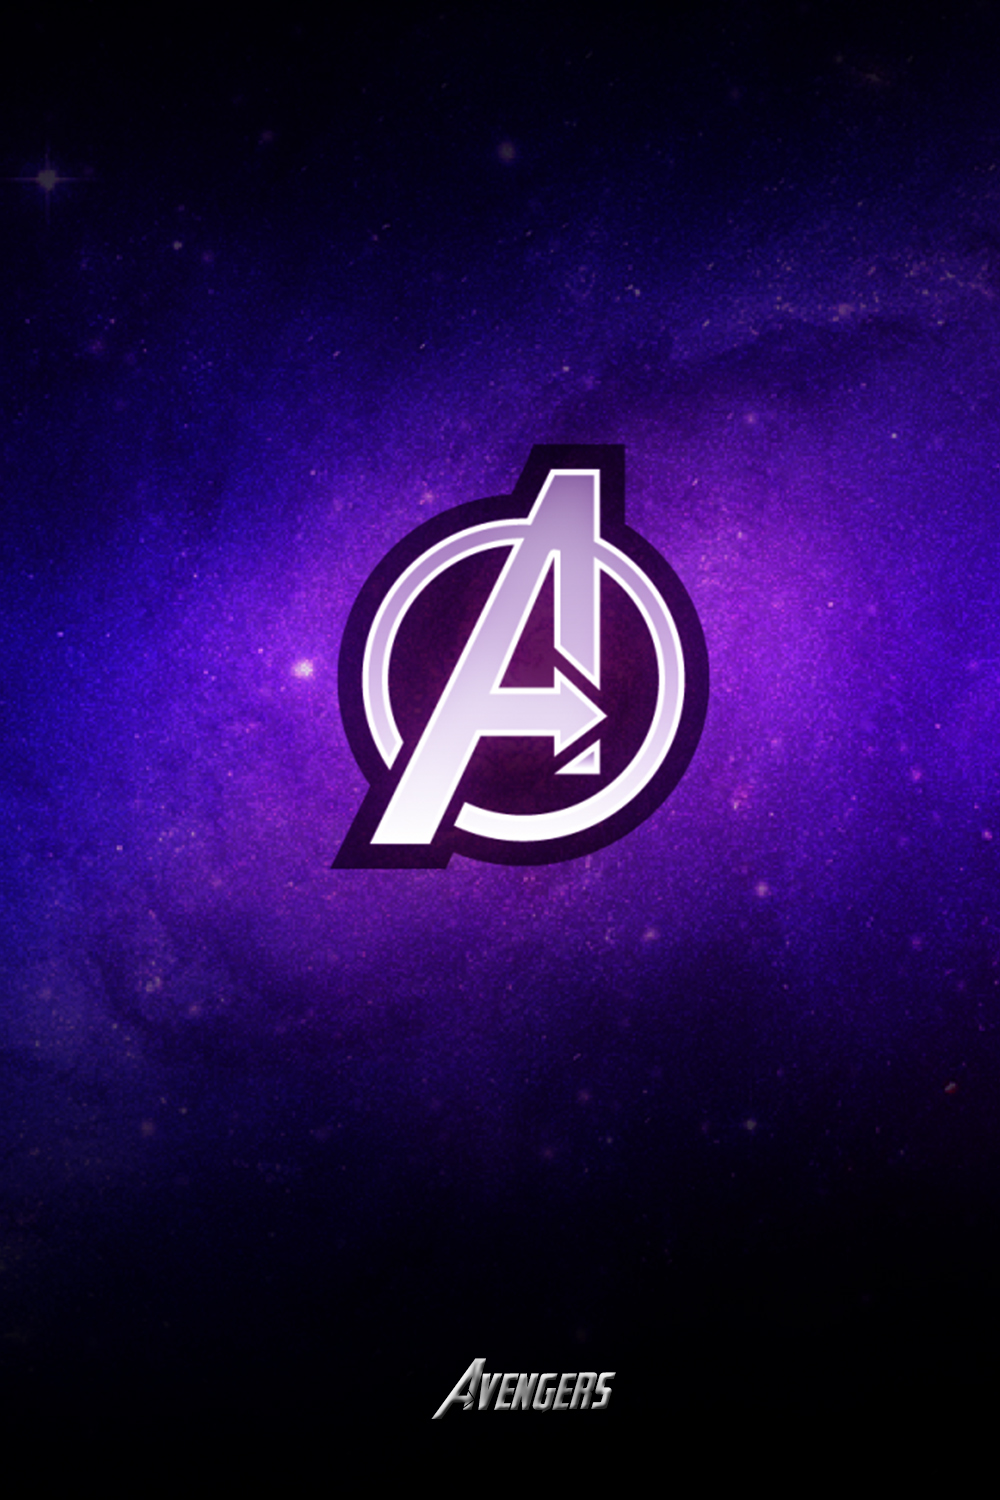 Avengers , HD Wallpaper & Backgrounds